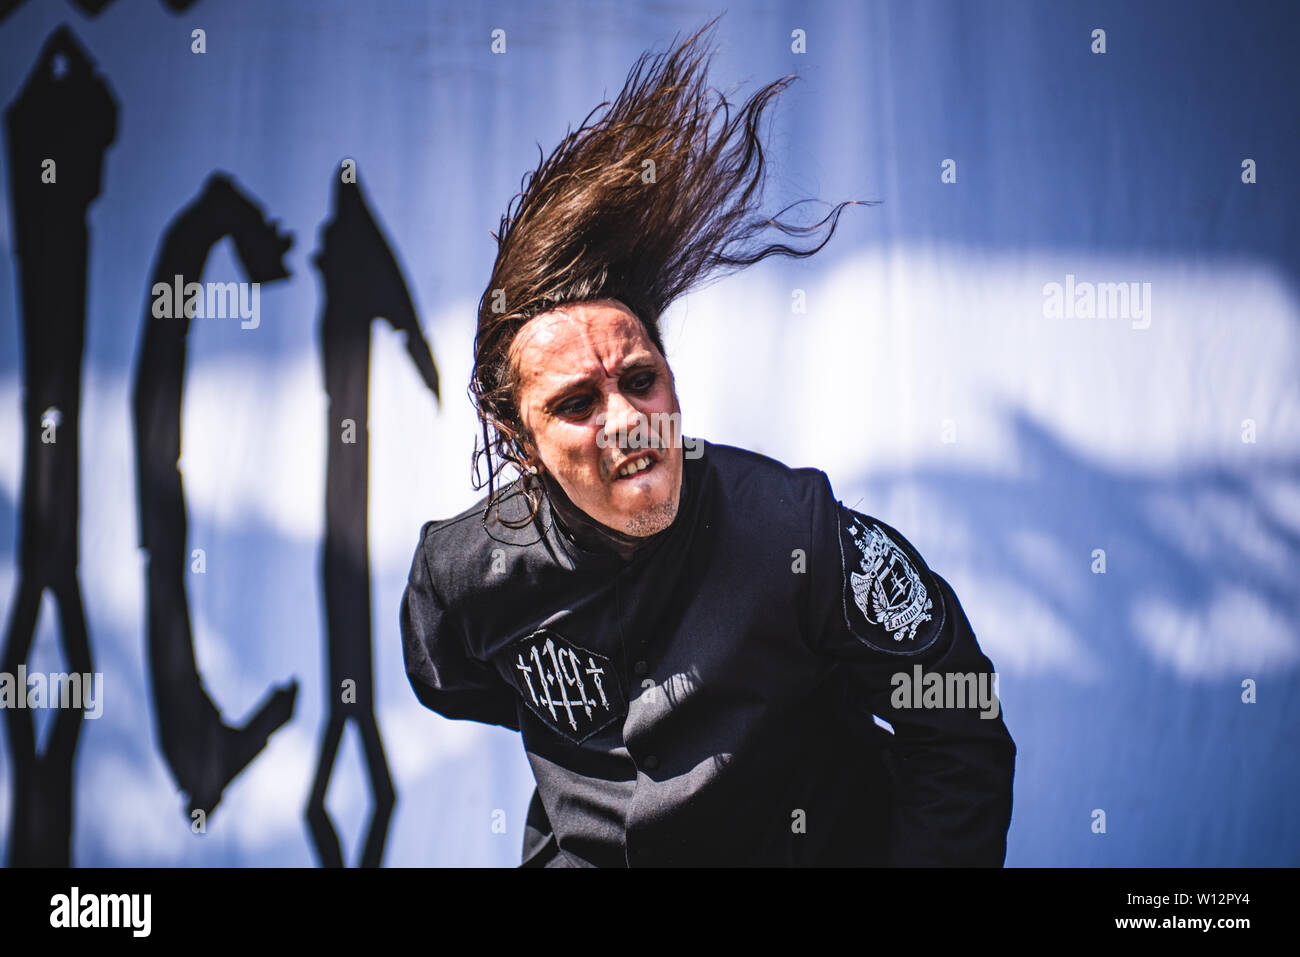 Andrea Ferro, chanteur du groupe de metal gothique italien Lacuna Coil, spectacle sur scène à Bologne, au parc 2019 Sonic Bologne première modifier Banque D'Images